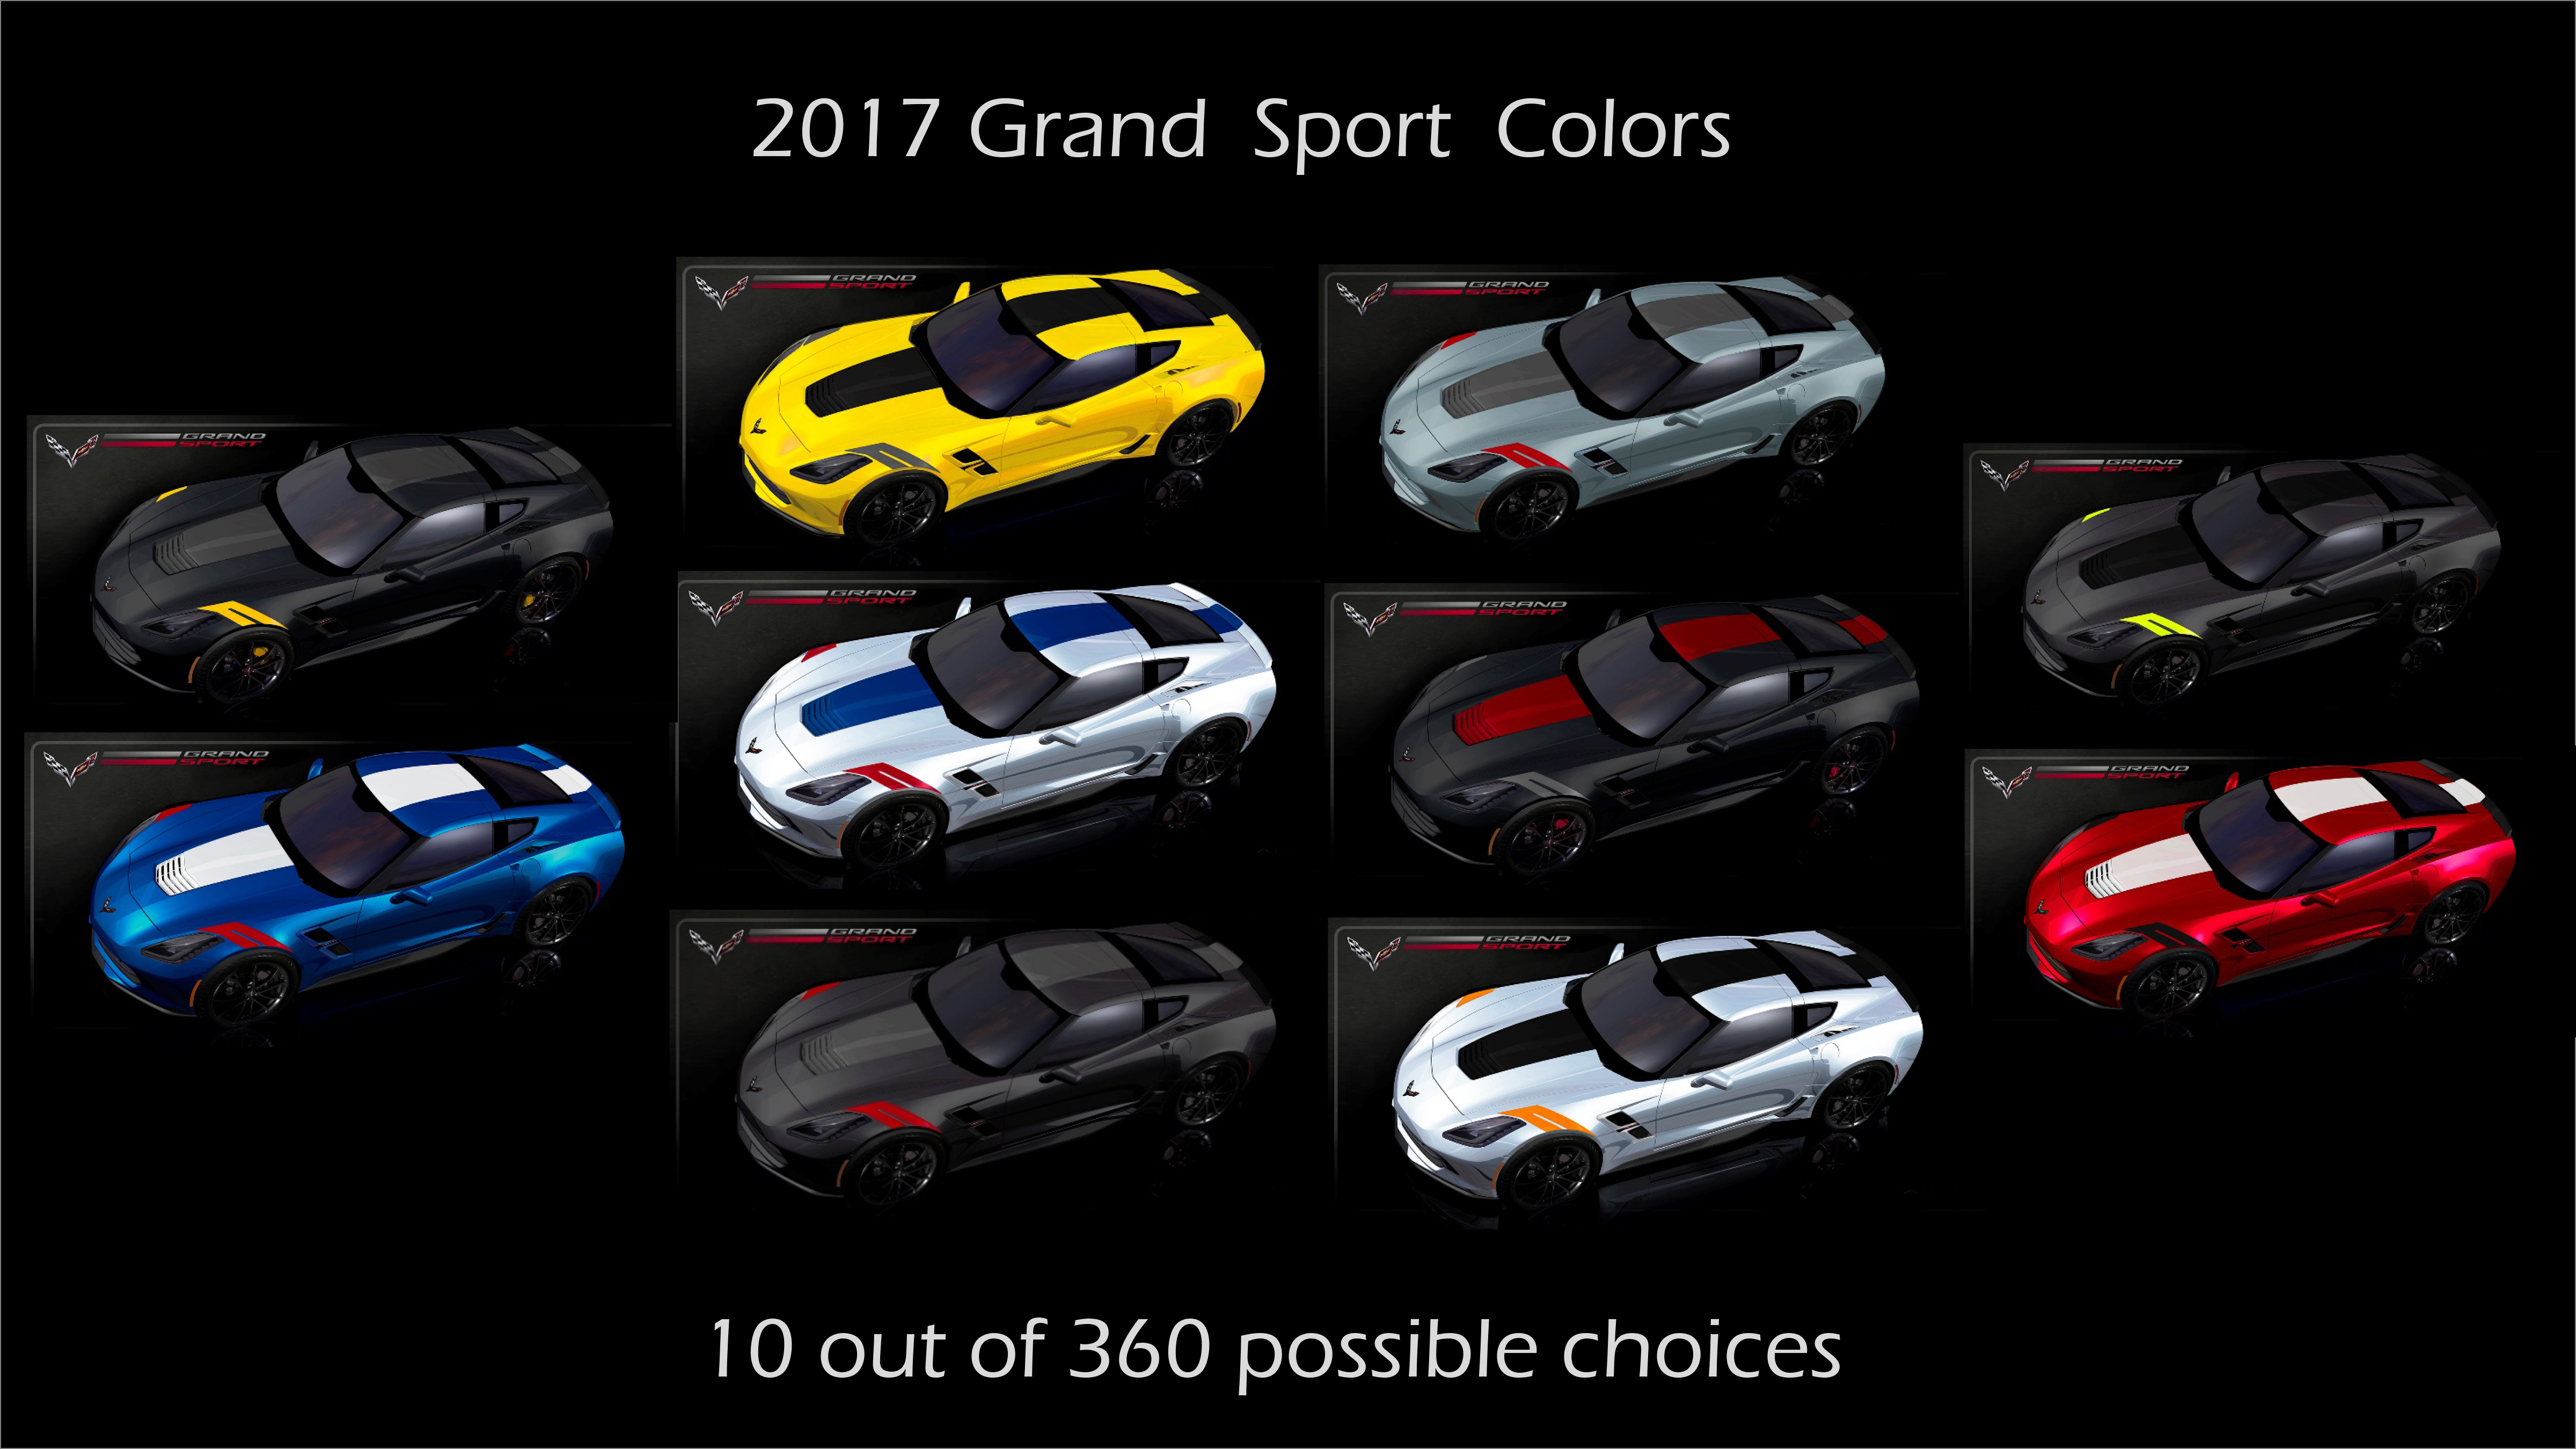 2017 Corvette Grand Sport - Up to 360 Choices! - MacMulkin Corvette - #1  Corvette Dealer in the World!